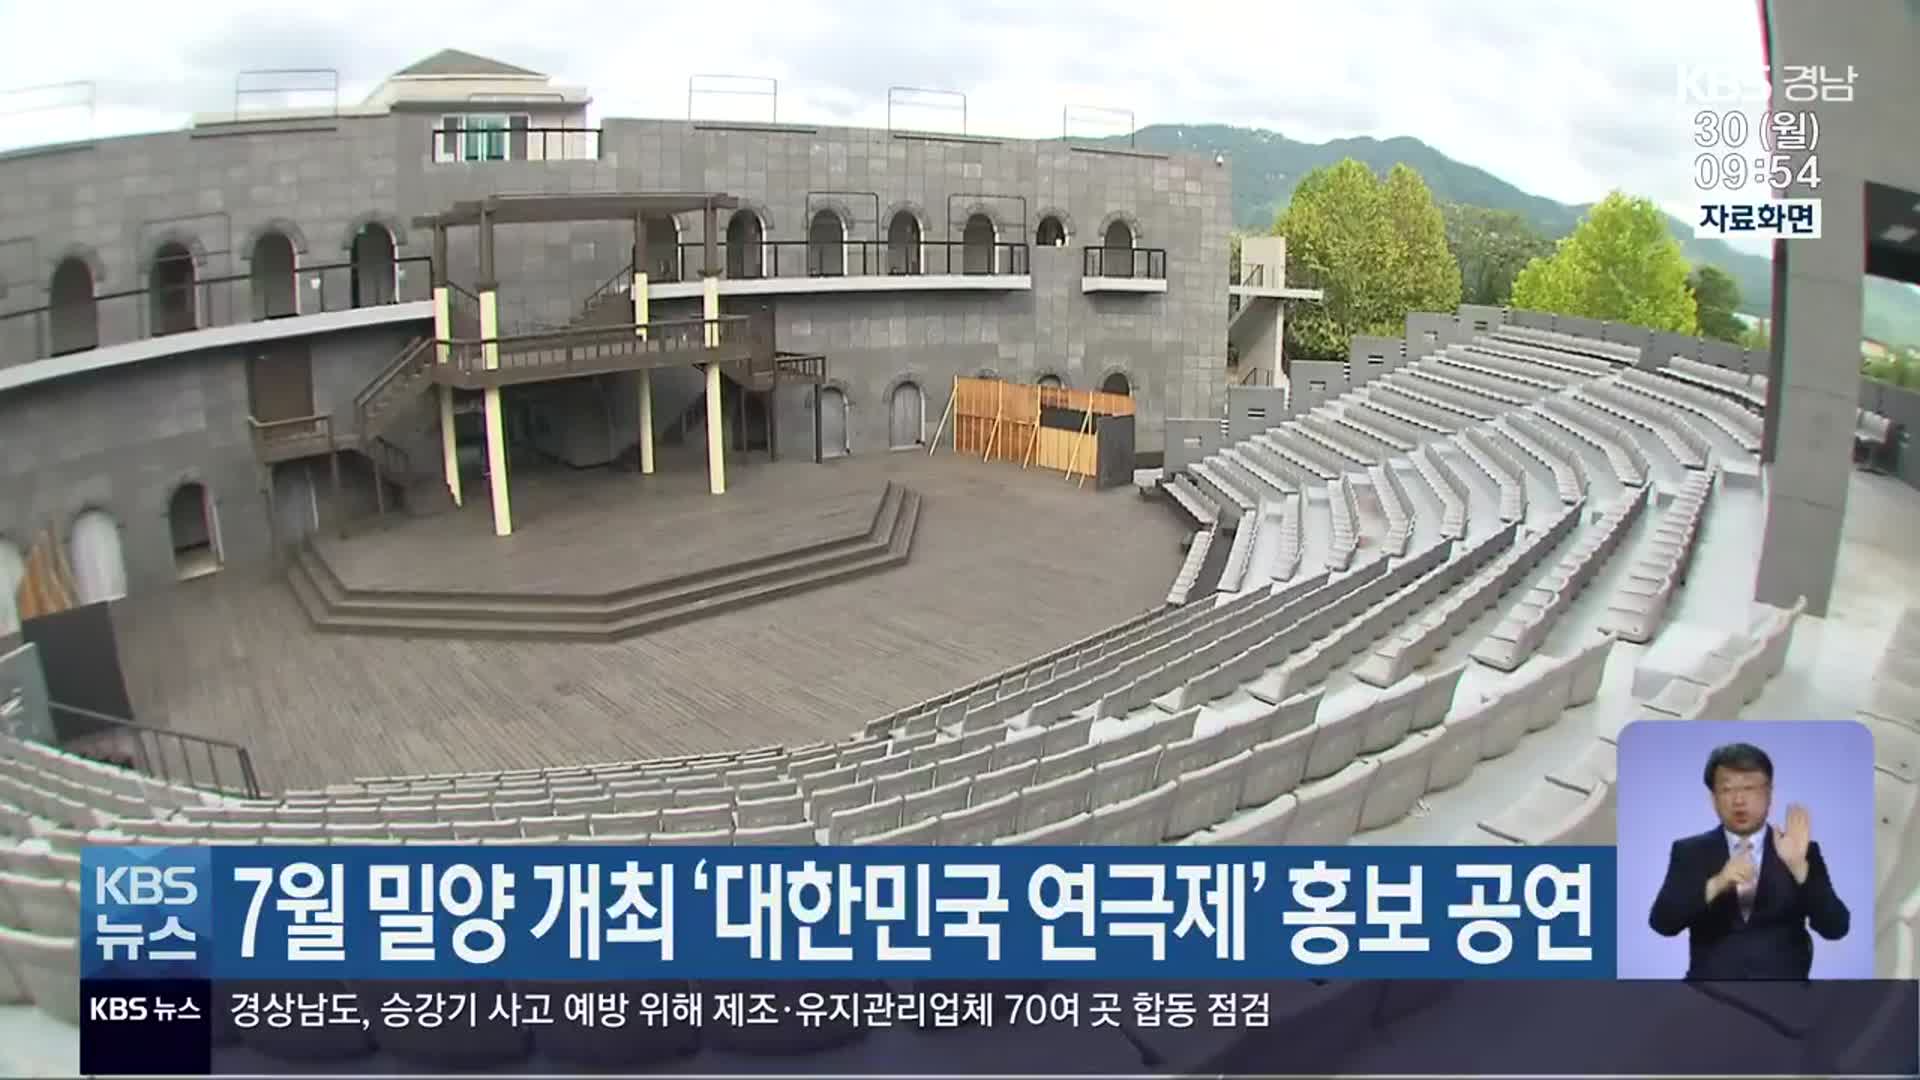 7월 밀양 개최 ‘대한민국 연극제’ 홍보 공연